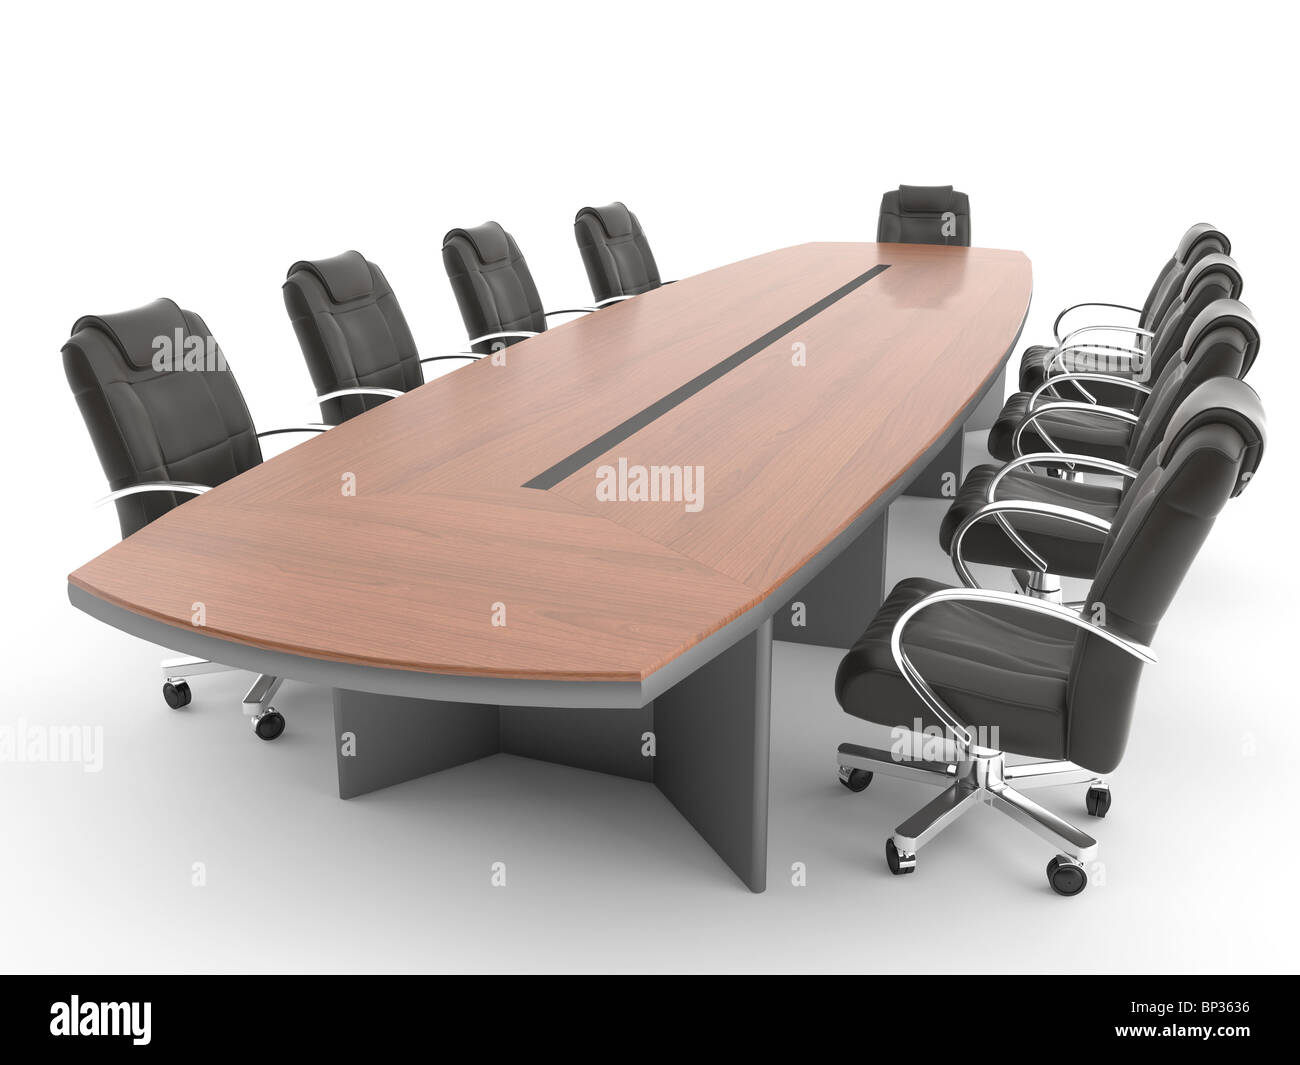 Tisch und Stuhl isoliert auf weißem Hintergrund, dieses Bild enthält ein BESCHNEIDUNGSPFAD zu treffen. Stockfoto